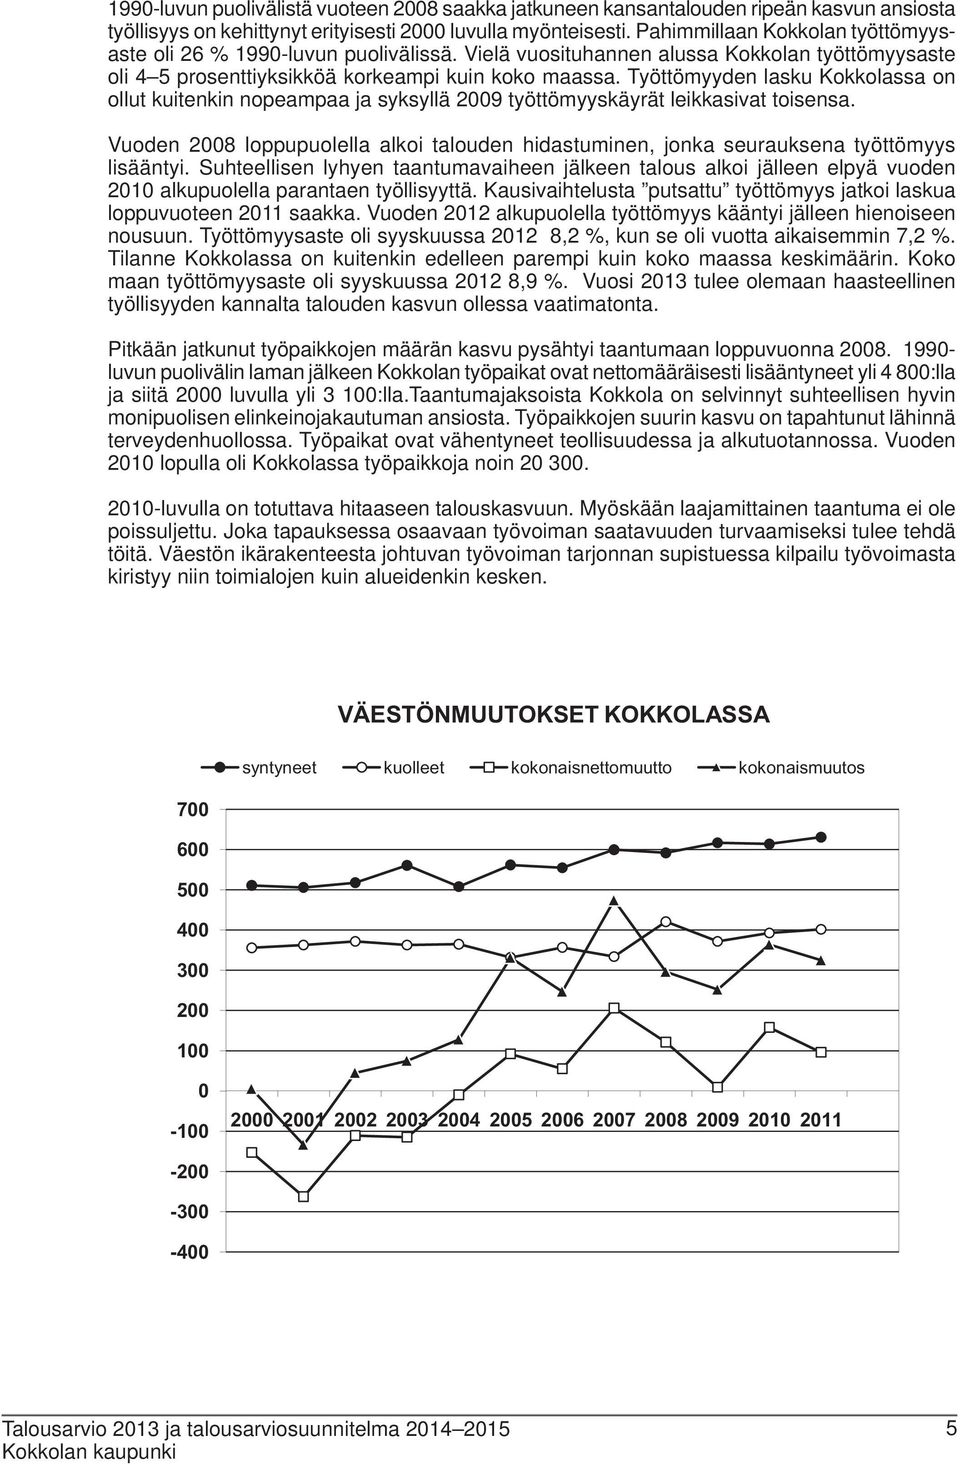 Työttömyyden lasku Kokkolassa on ollut kuitenkin nopeampaa ja syksyllä 2009 työttömyyskäyrät leikkasivat toisensa.